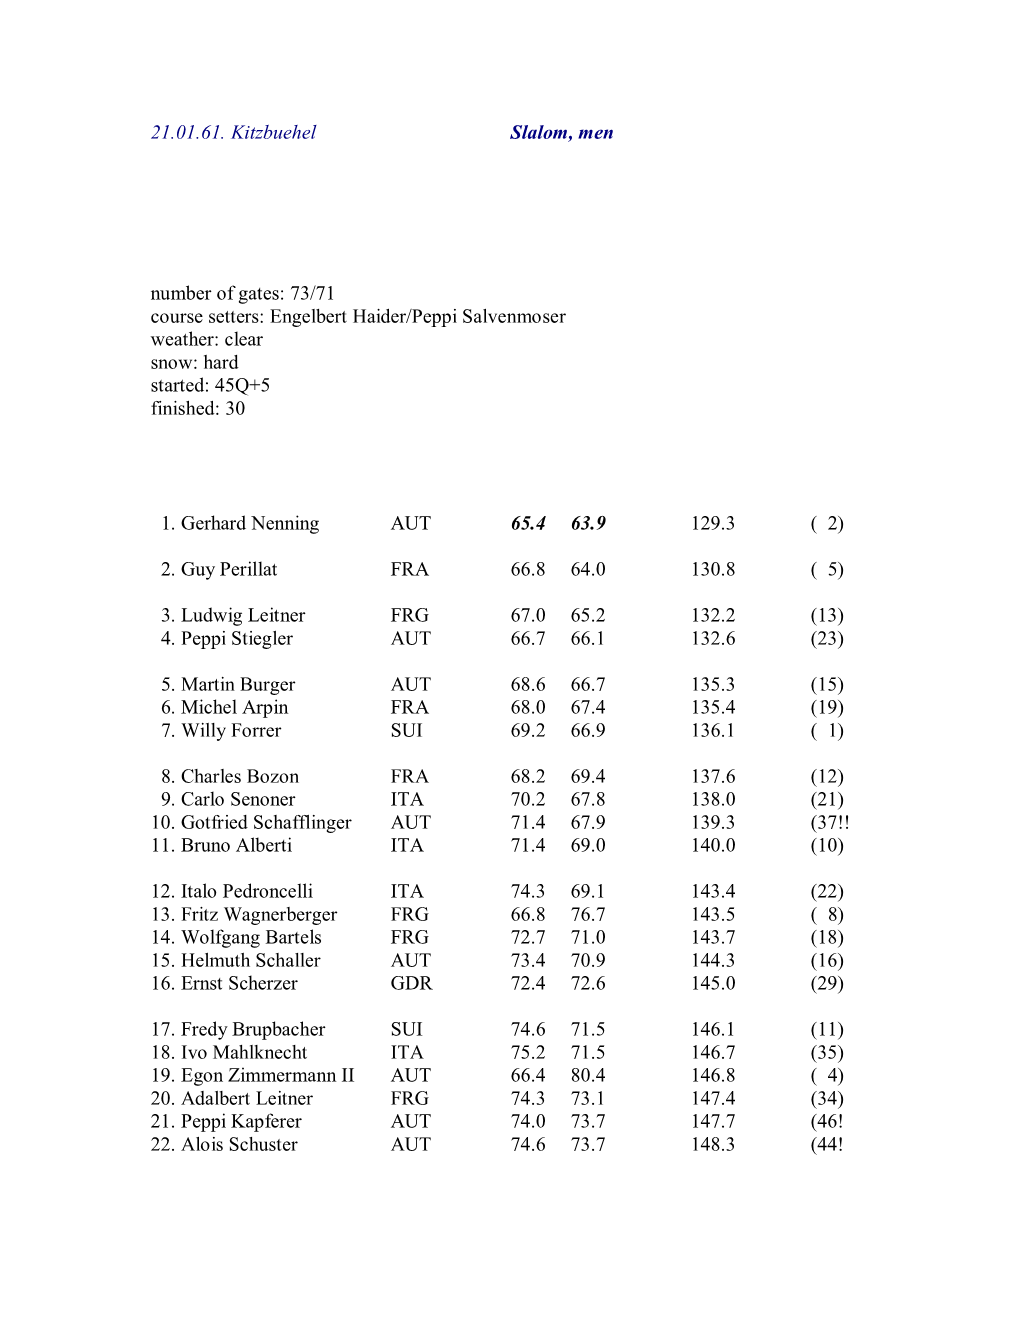 21.01.61. Kitzbuehel Slalom, Men Number of Gates: 73/71 Course